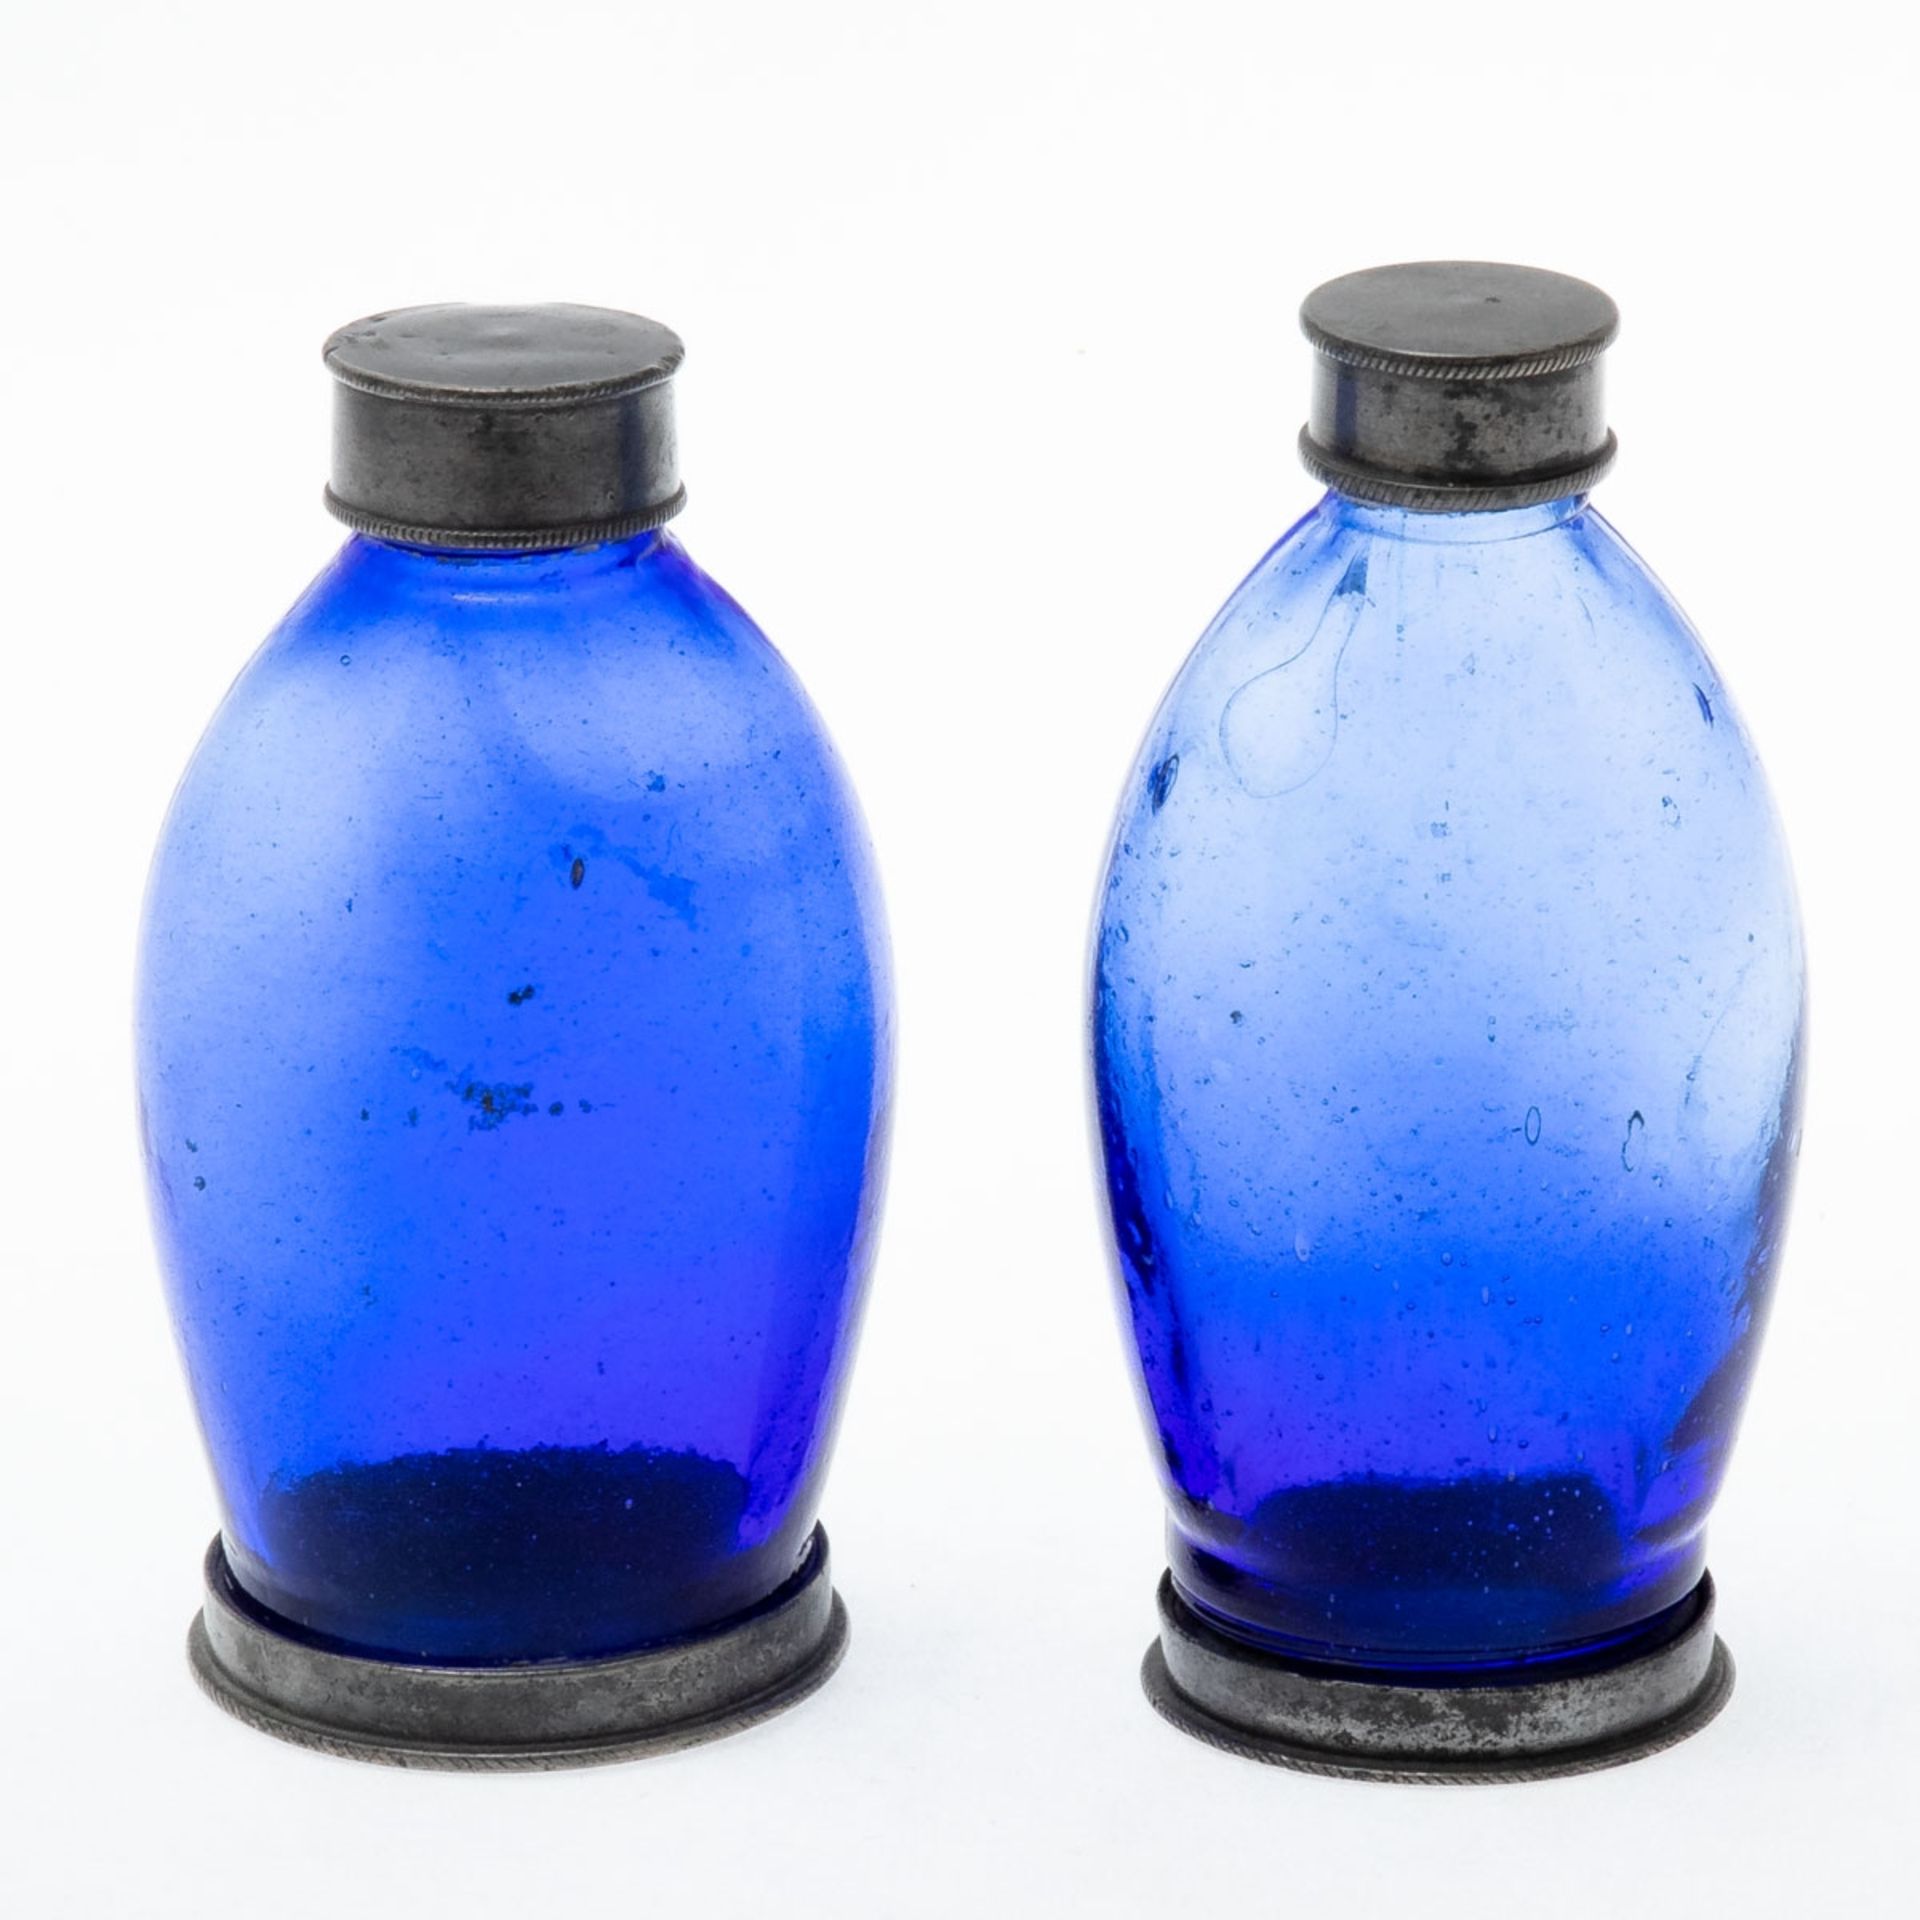 2 Apothekerflaschen 19. Jahrhundert. Blaues Glas. Fuß und Hals mit Schraubgewinde. Zinnboden